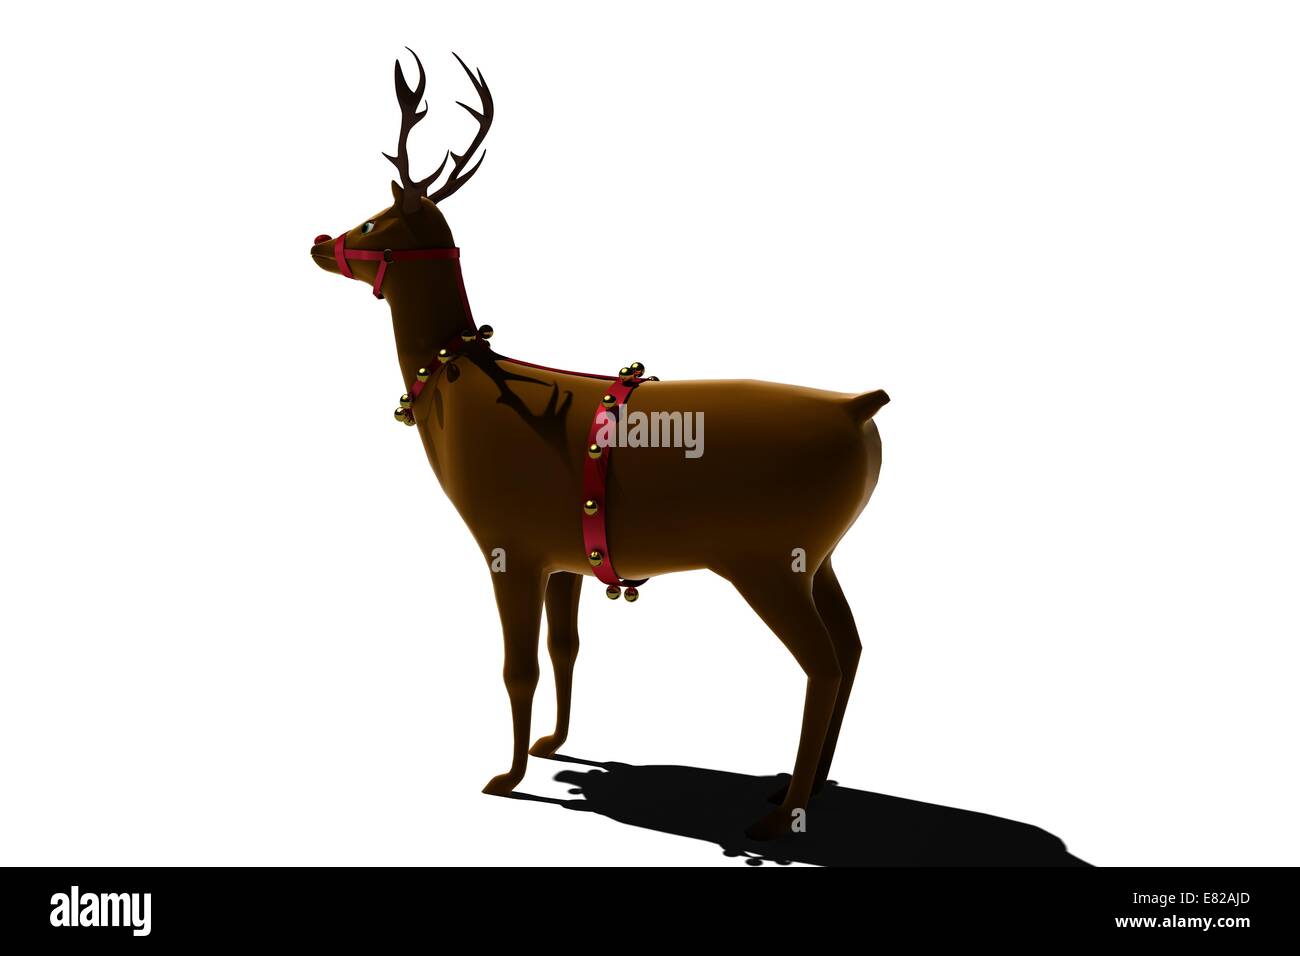 Santas numérique avec des cloches de rennes Banque D'Images